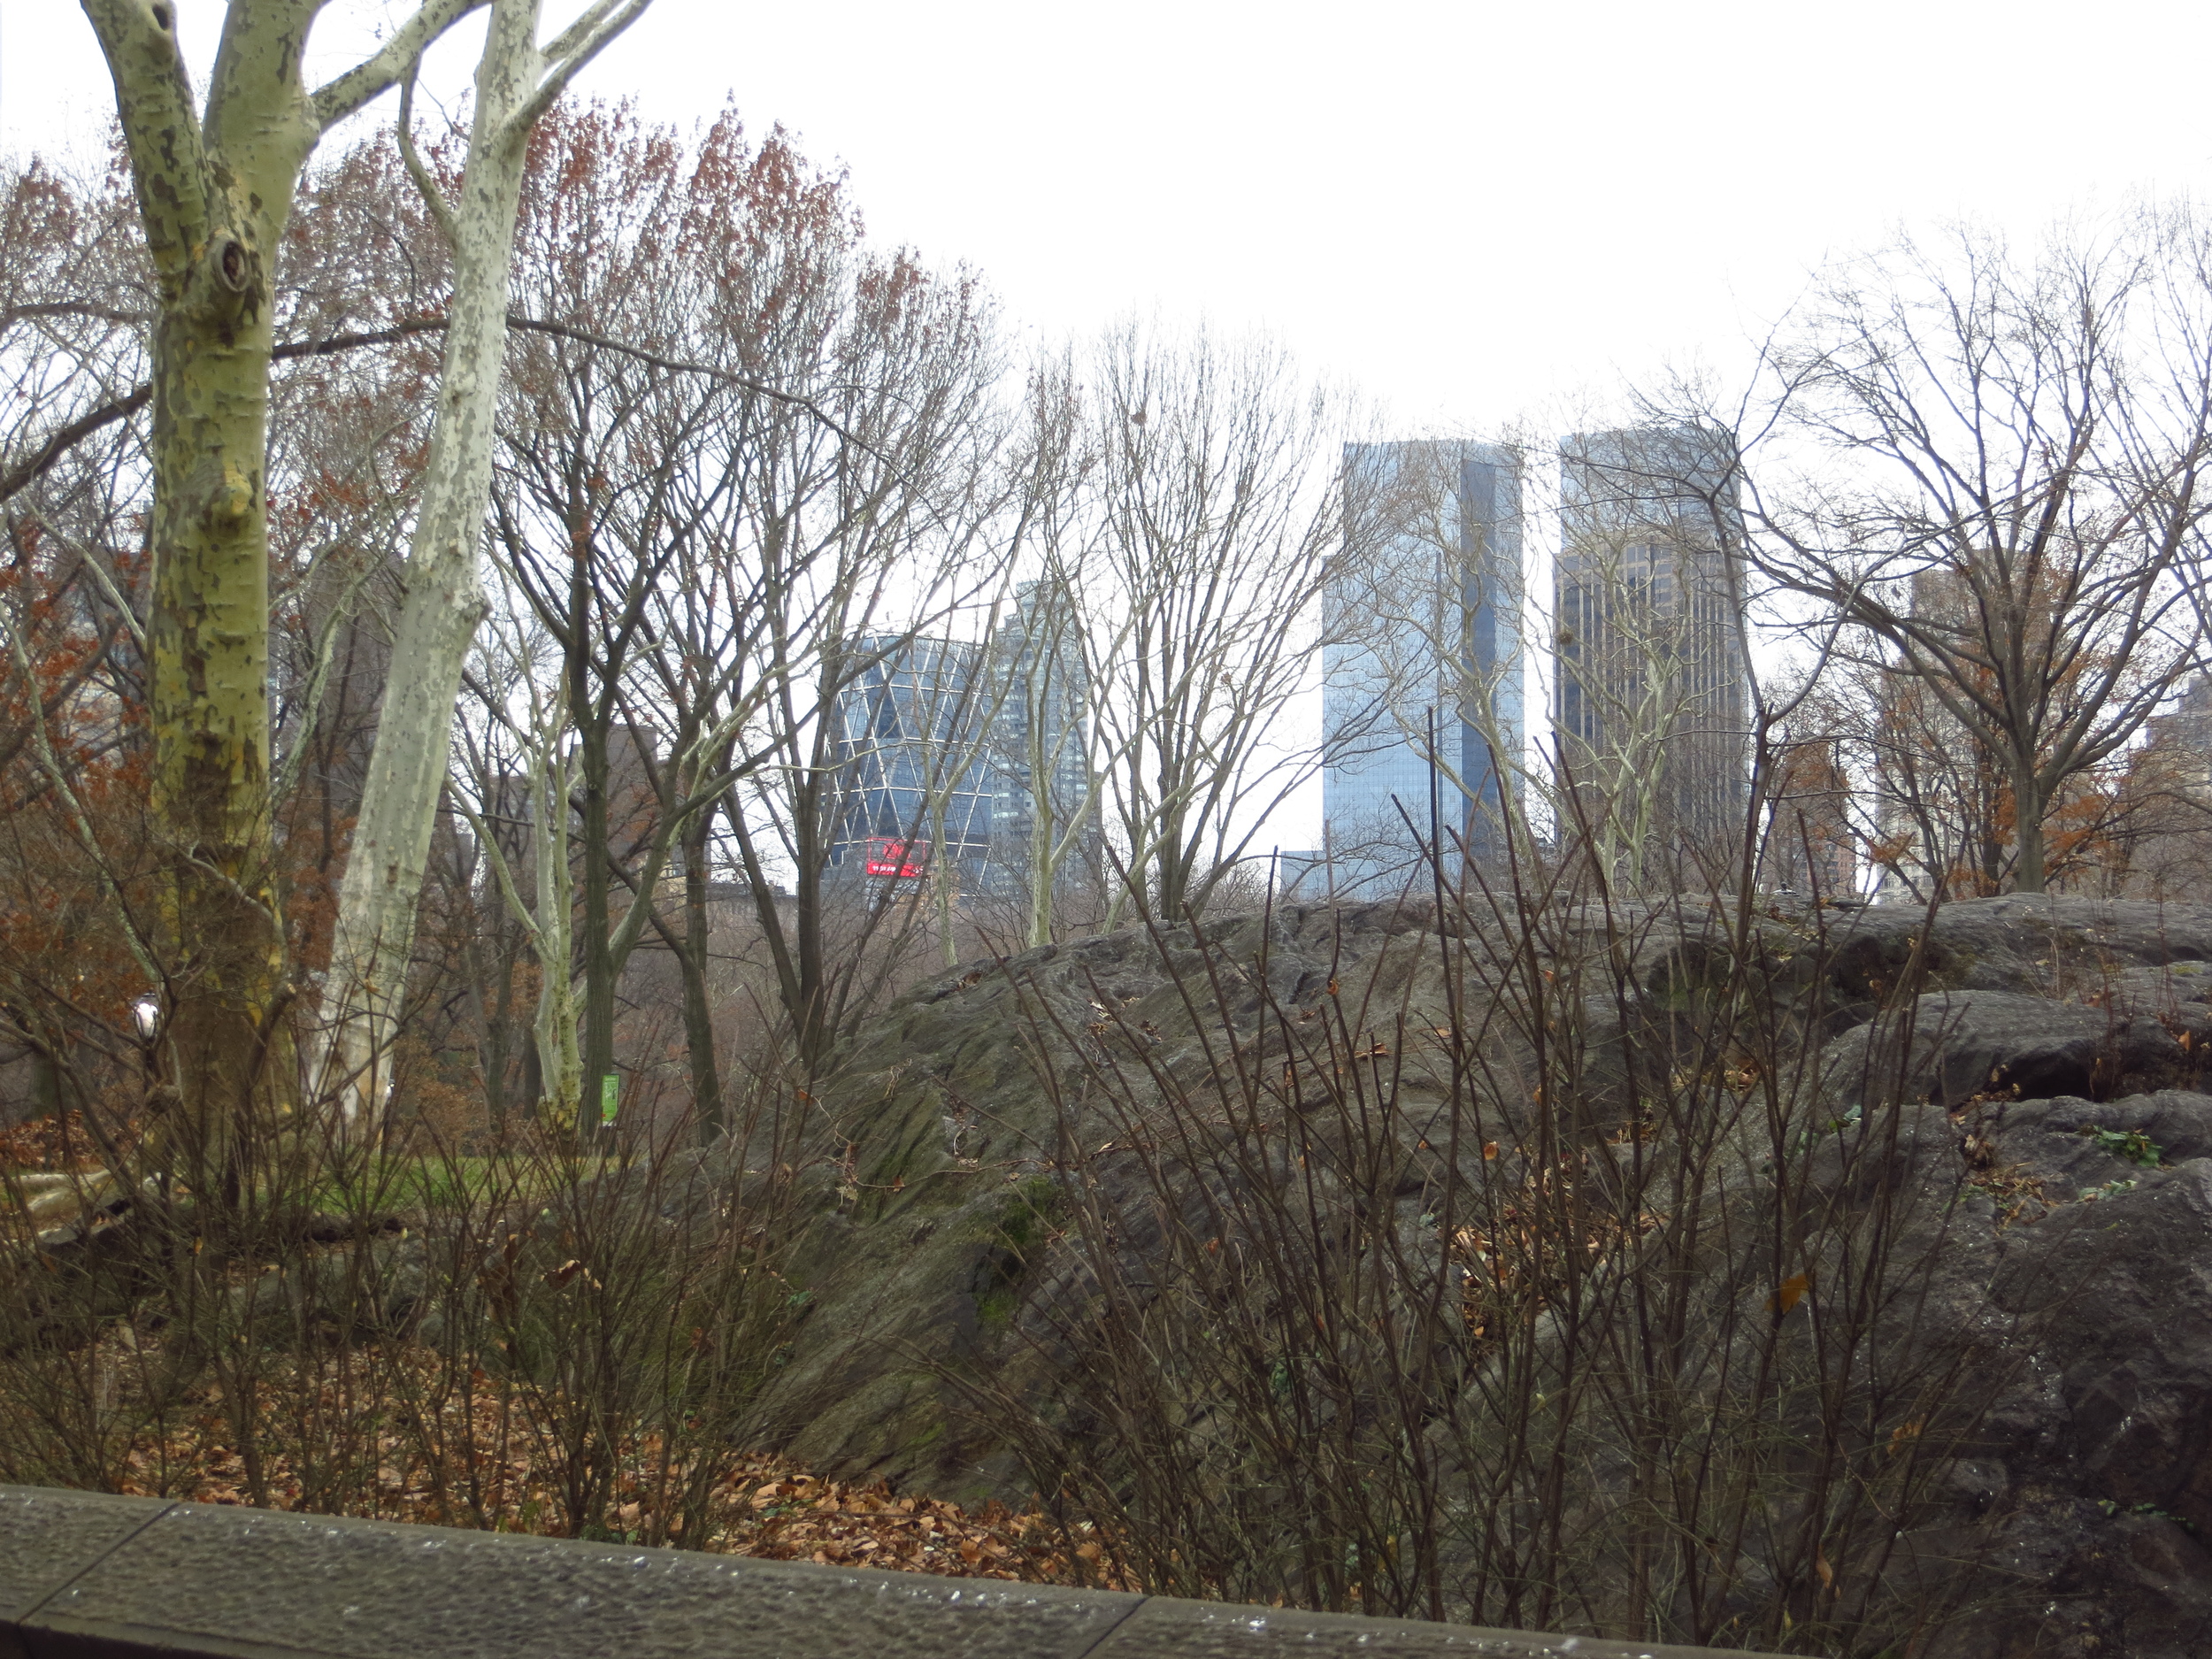 Time Warner Center across the Park